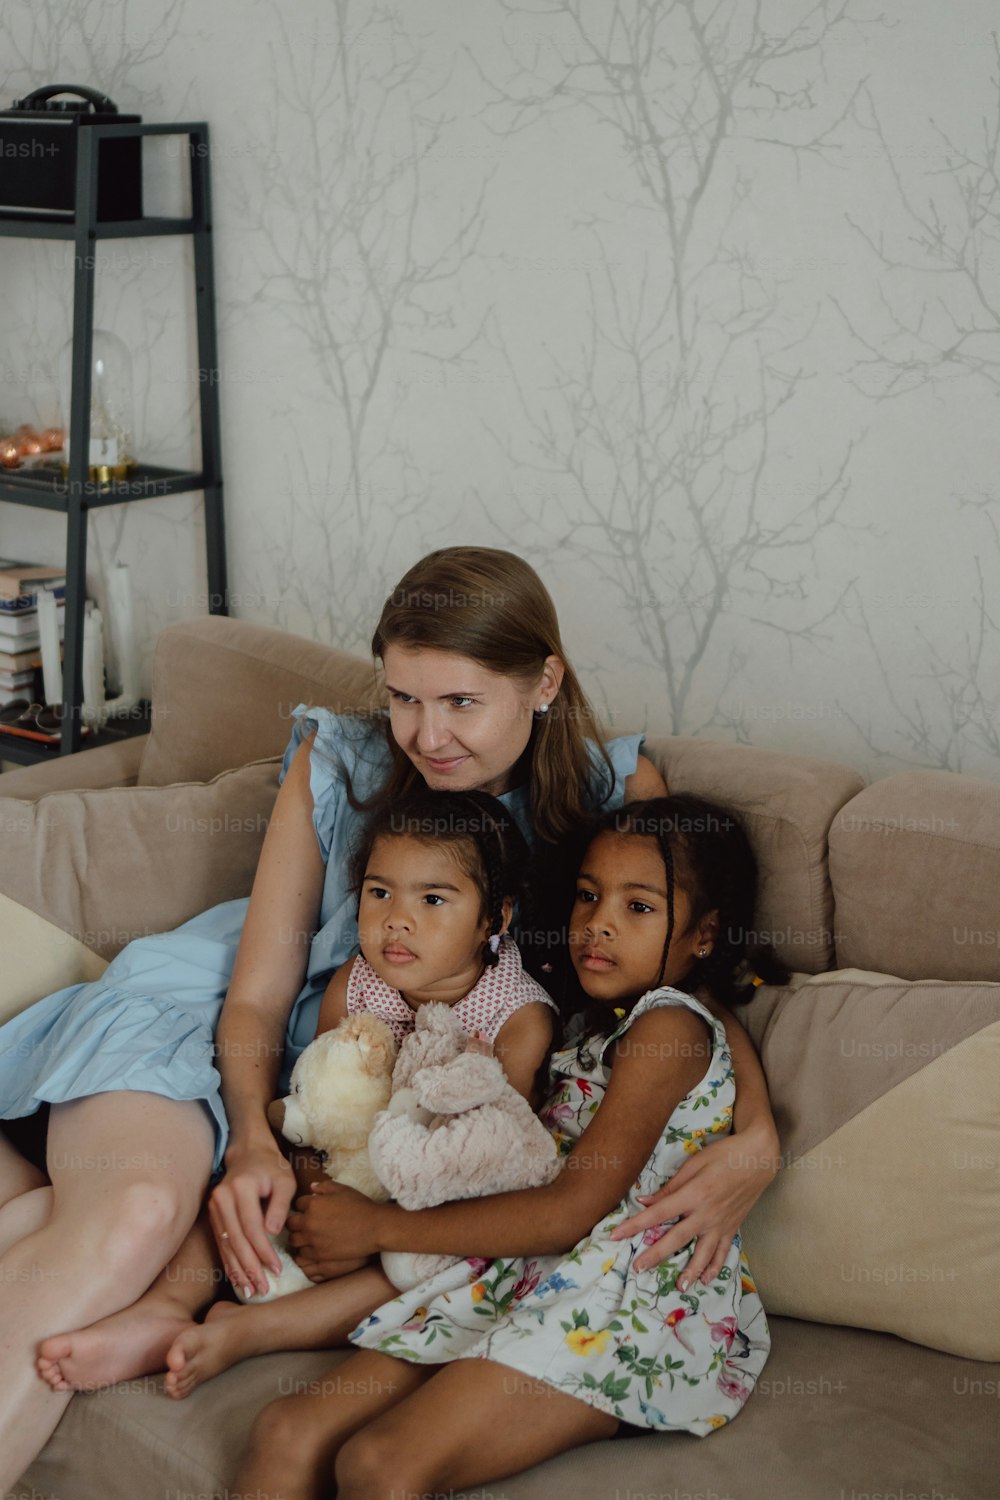 Una donna seduta su un divano con due bambini